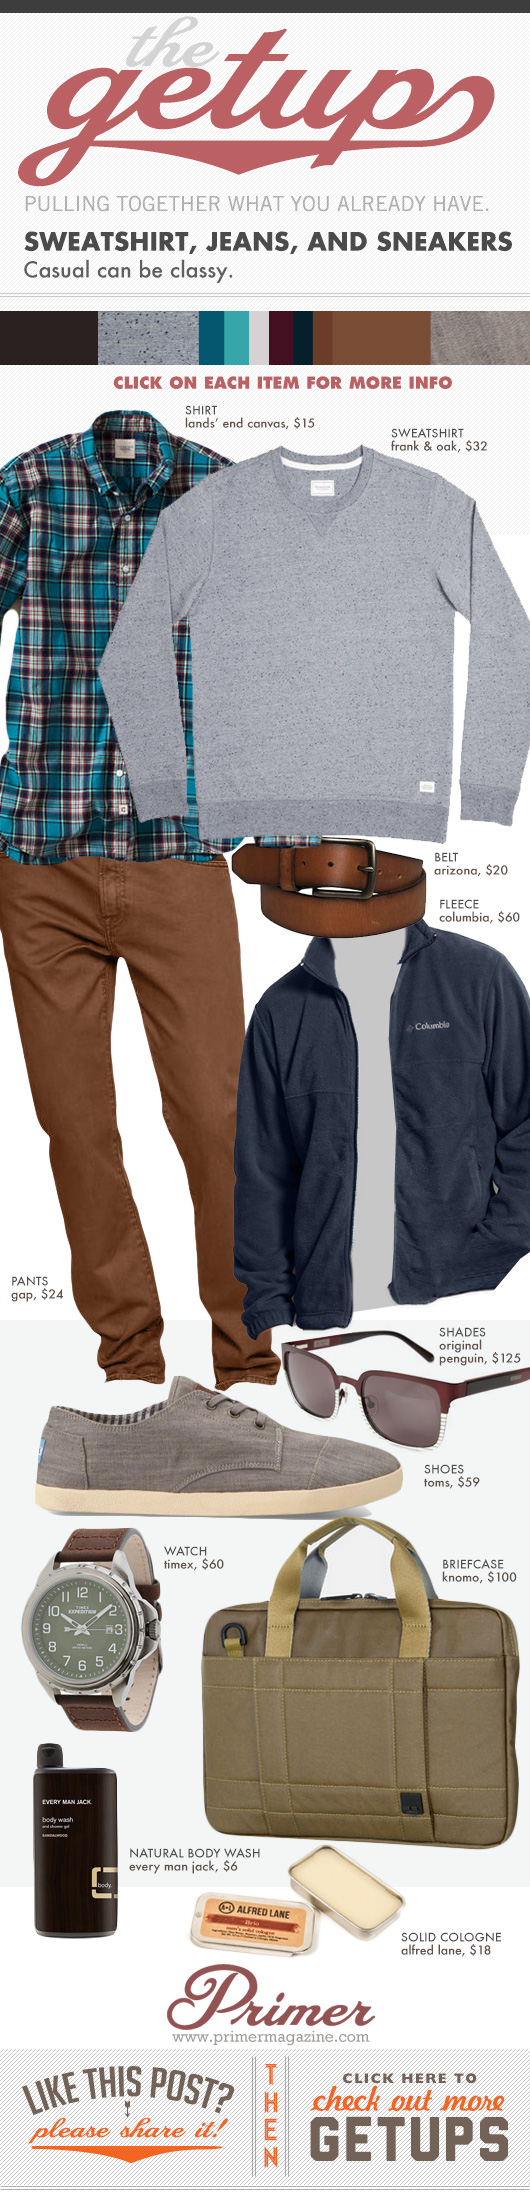 Getup Sweatshirt Jeans and sneakers - Brown pants Blue Jacket